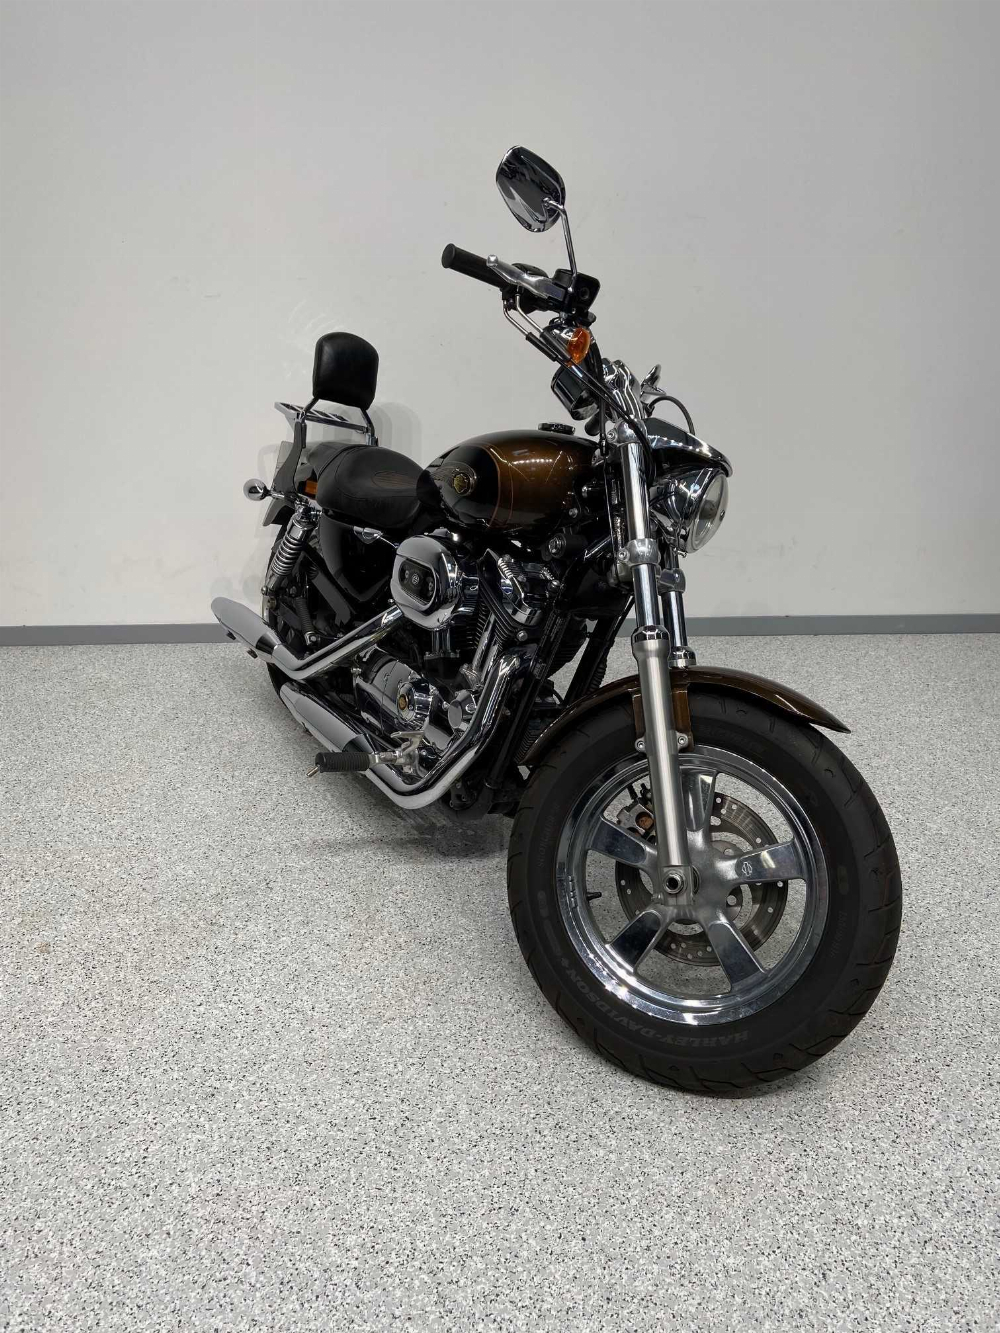 Harley-Davidson XL 1200 2013 vue 3/4 droite